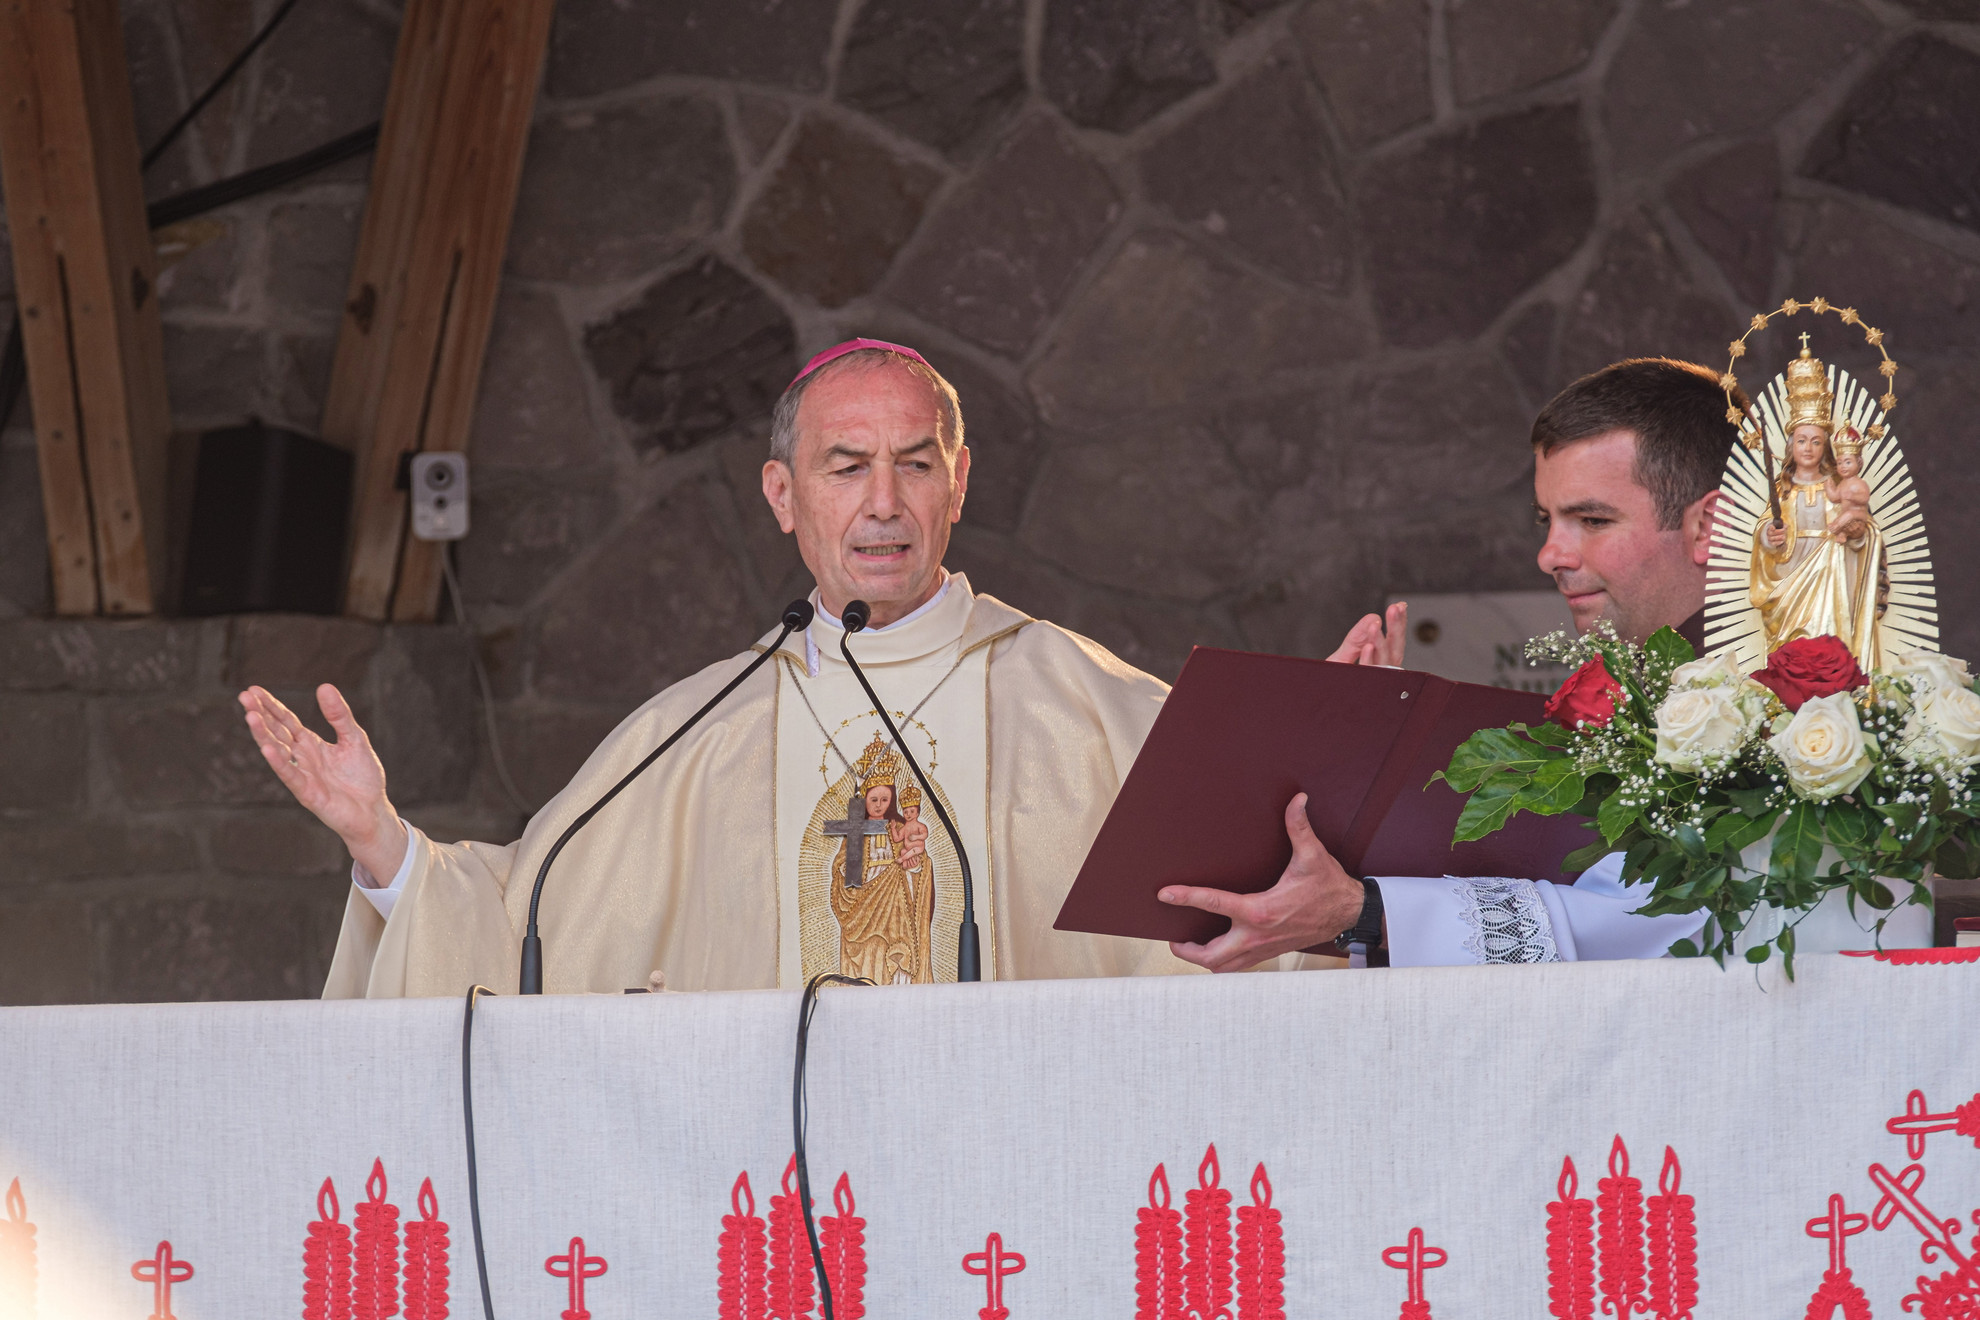 Udvardy György veszprémi érsek, ünnepi szónok a csíksomlyói búcsú szentmiséjén a Kis- és Nagysomlyó-hegy közötti hegynyeregben Csíksomlyón 2022. június 4-én